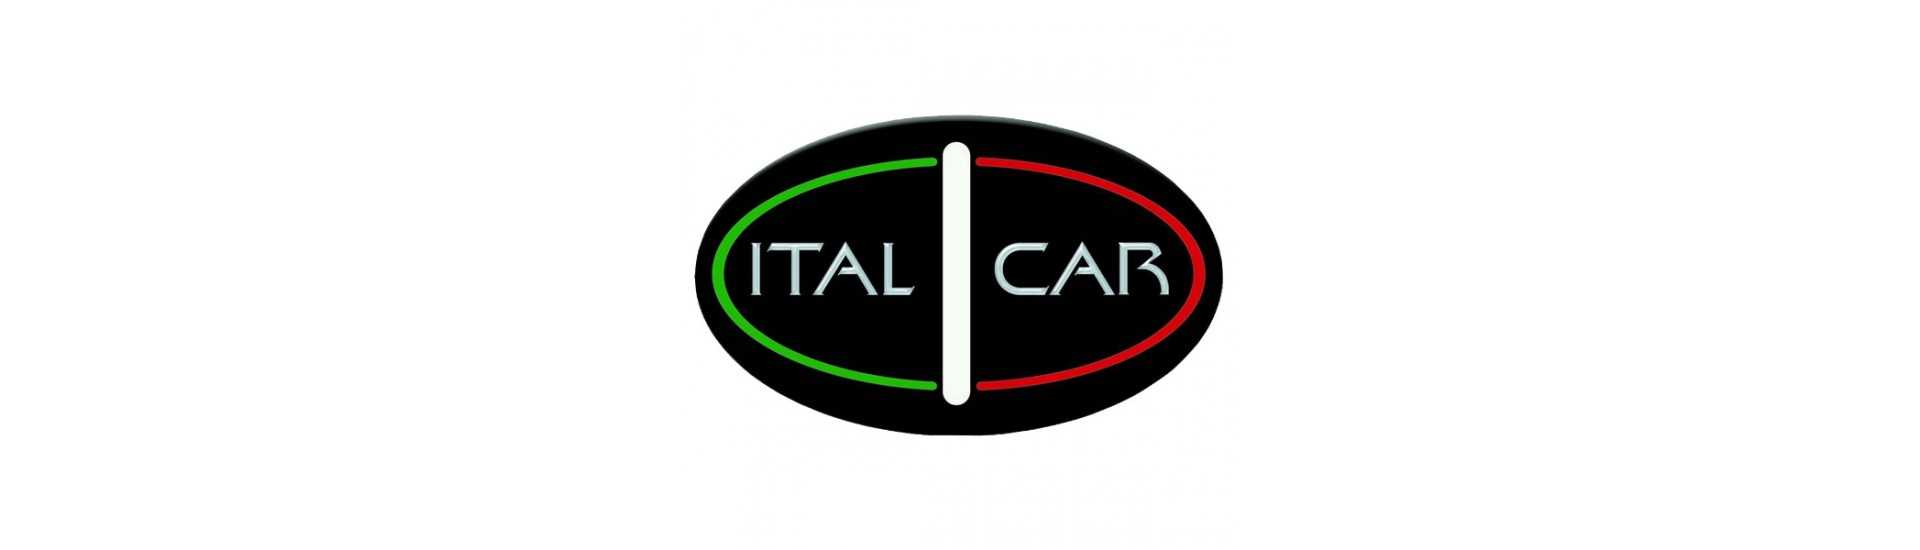 Korkein hinta autolle ilman lupaa Italcar